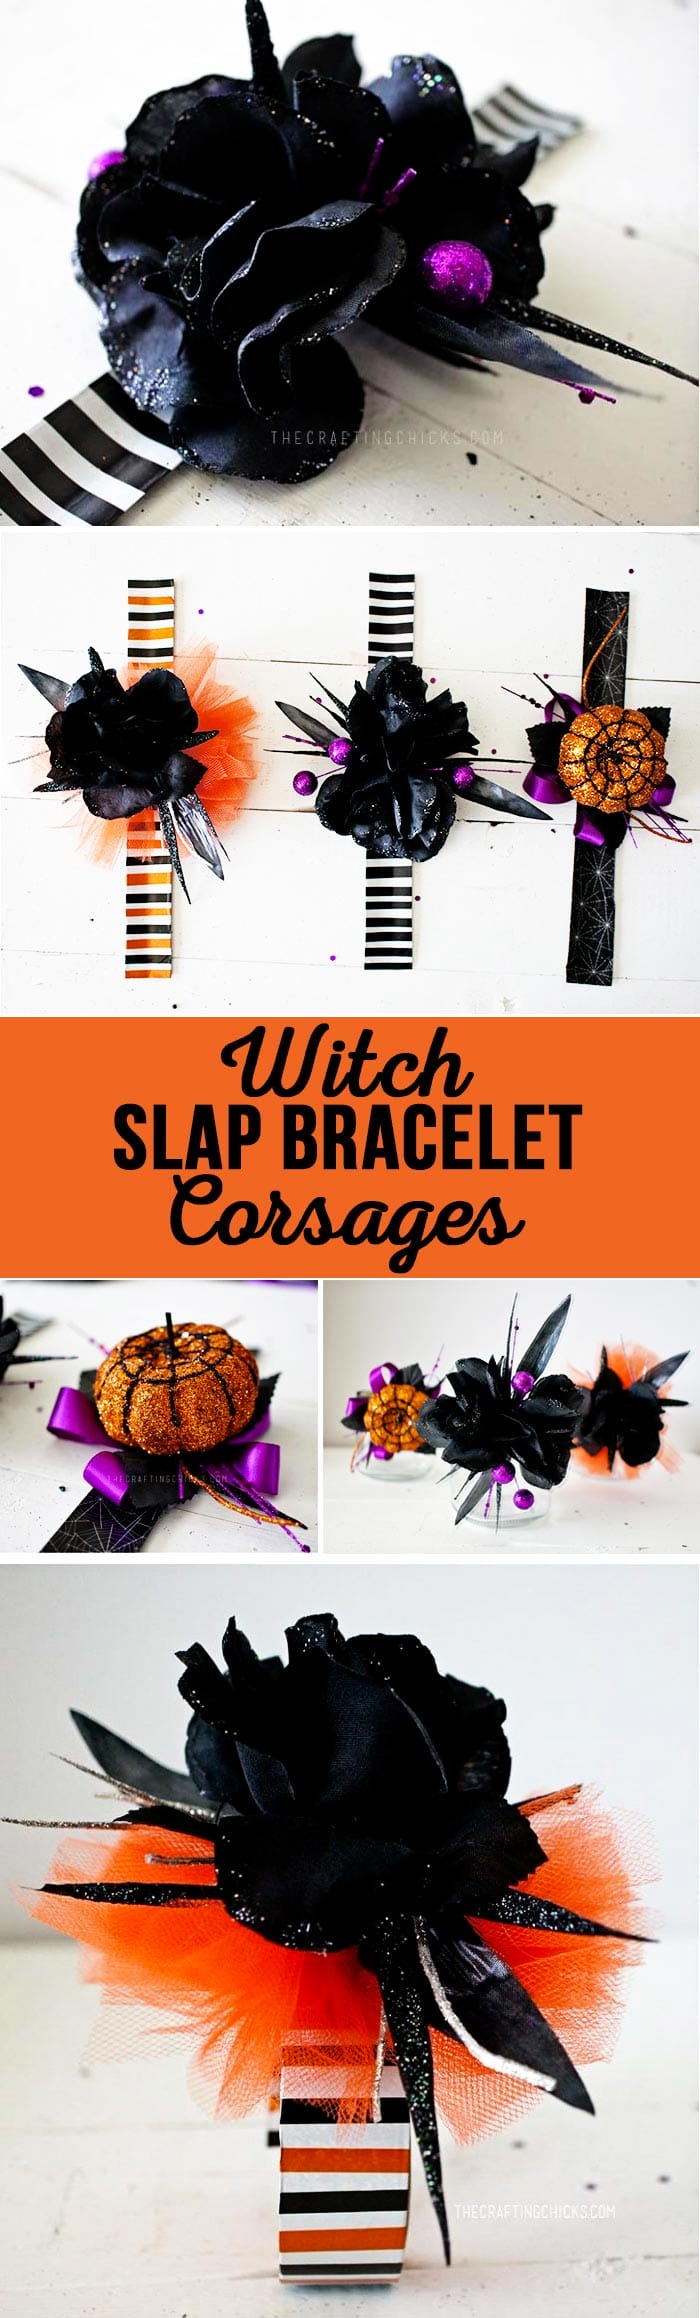 Witch Slap Bracelet Corsages